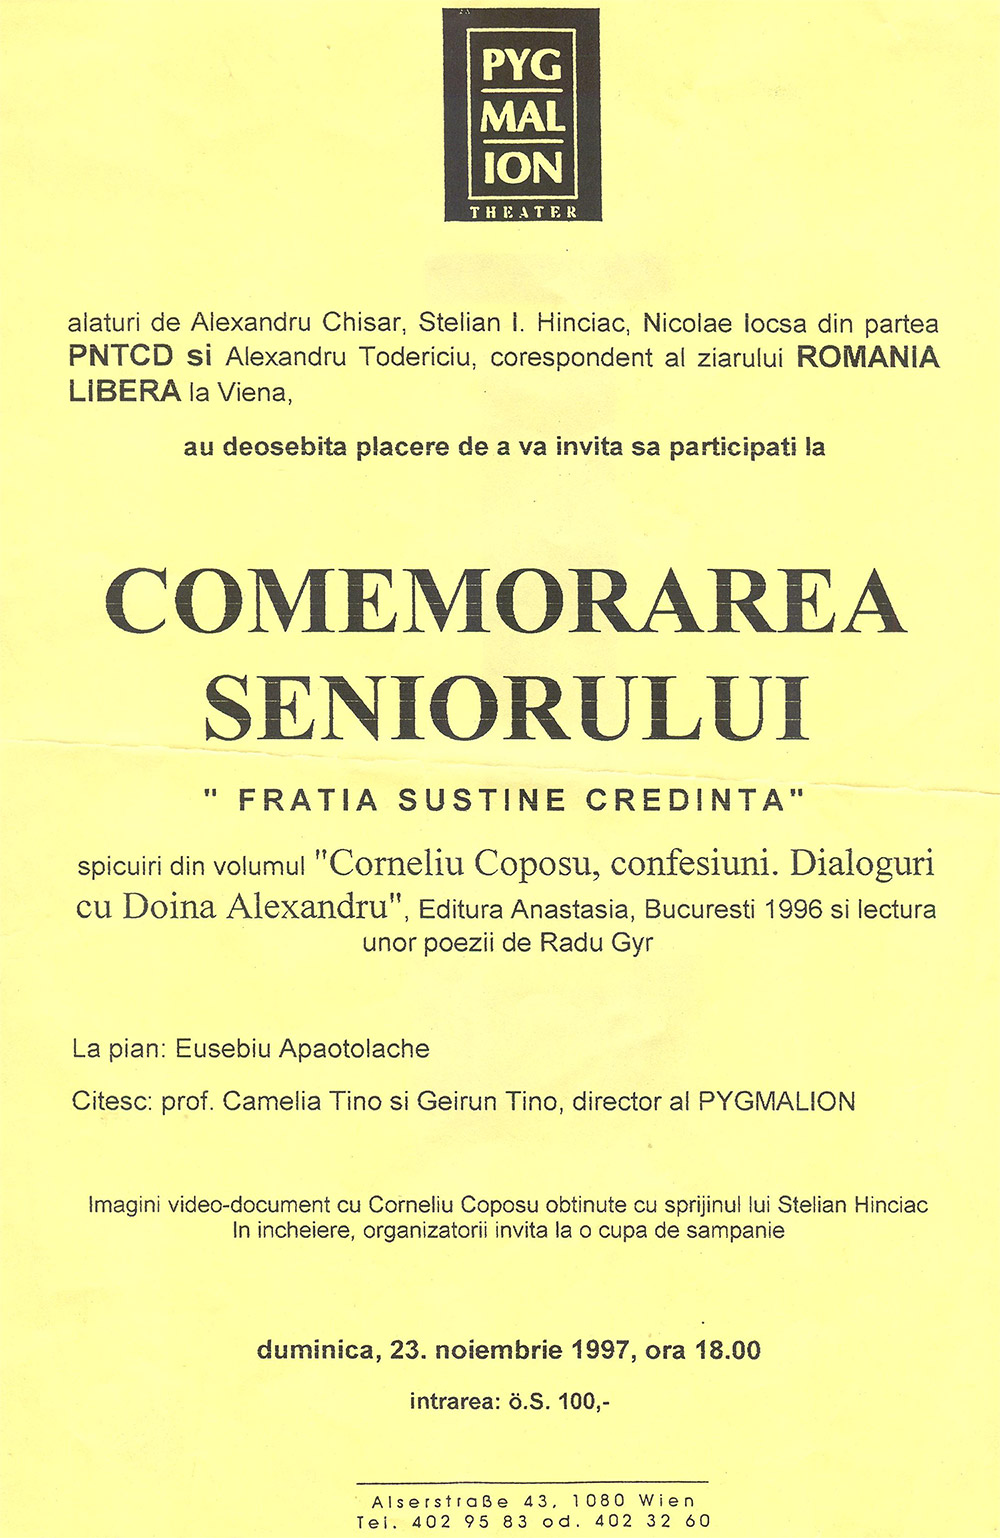 Comemorarea Seniorului - Frăția susține Credința - 23 noiembrie 1997